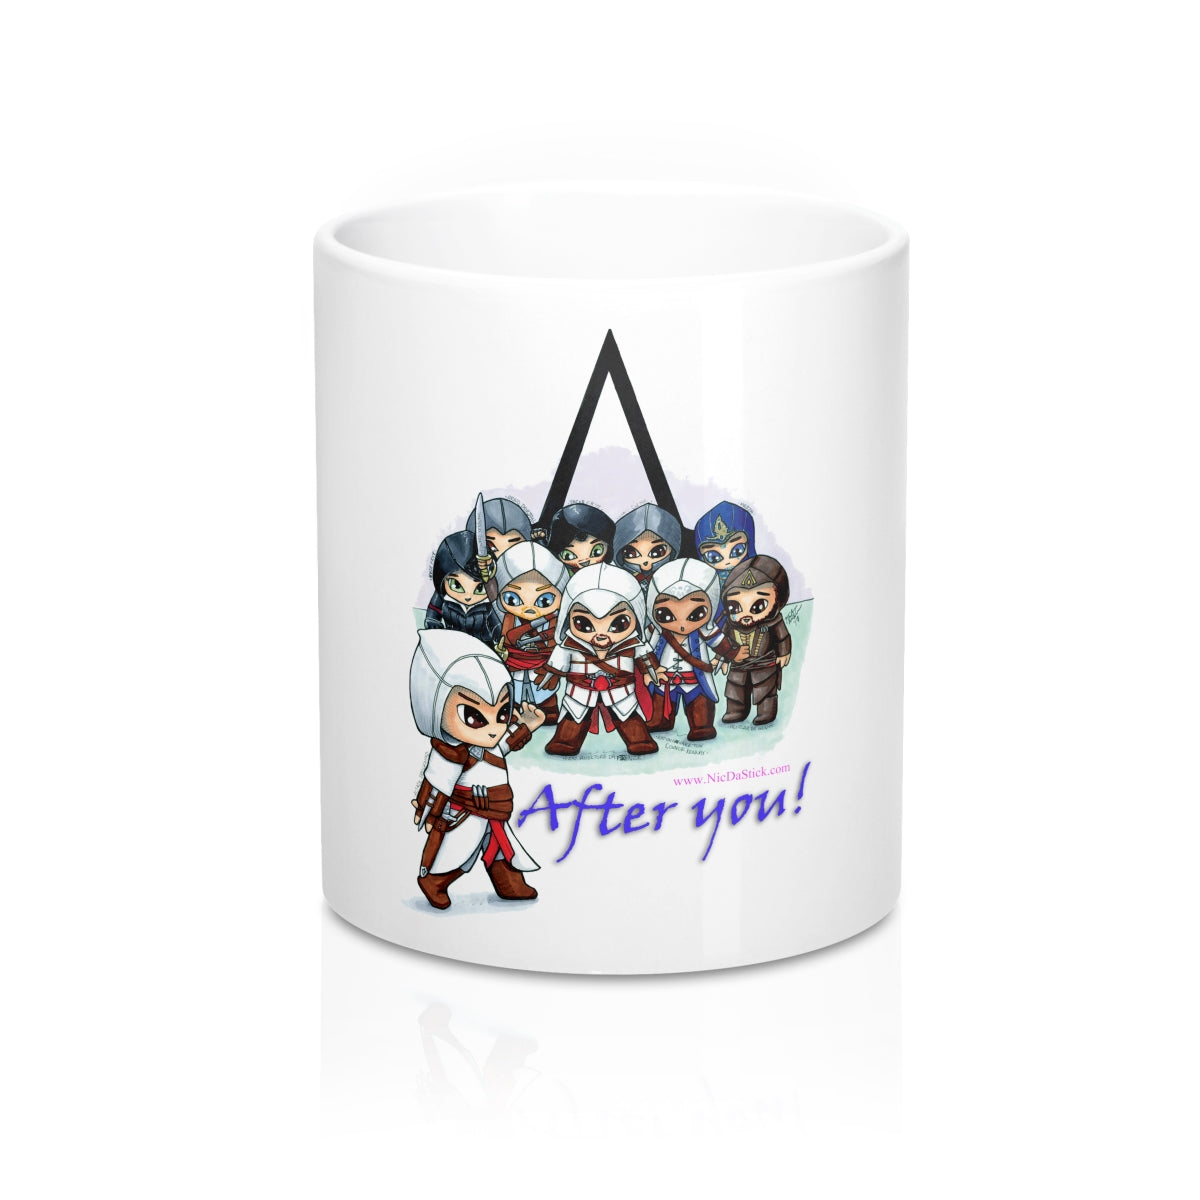 Assassins Creed - After you! Mug 11oz,Mug - Nic Da Stick Creations